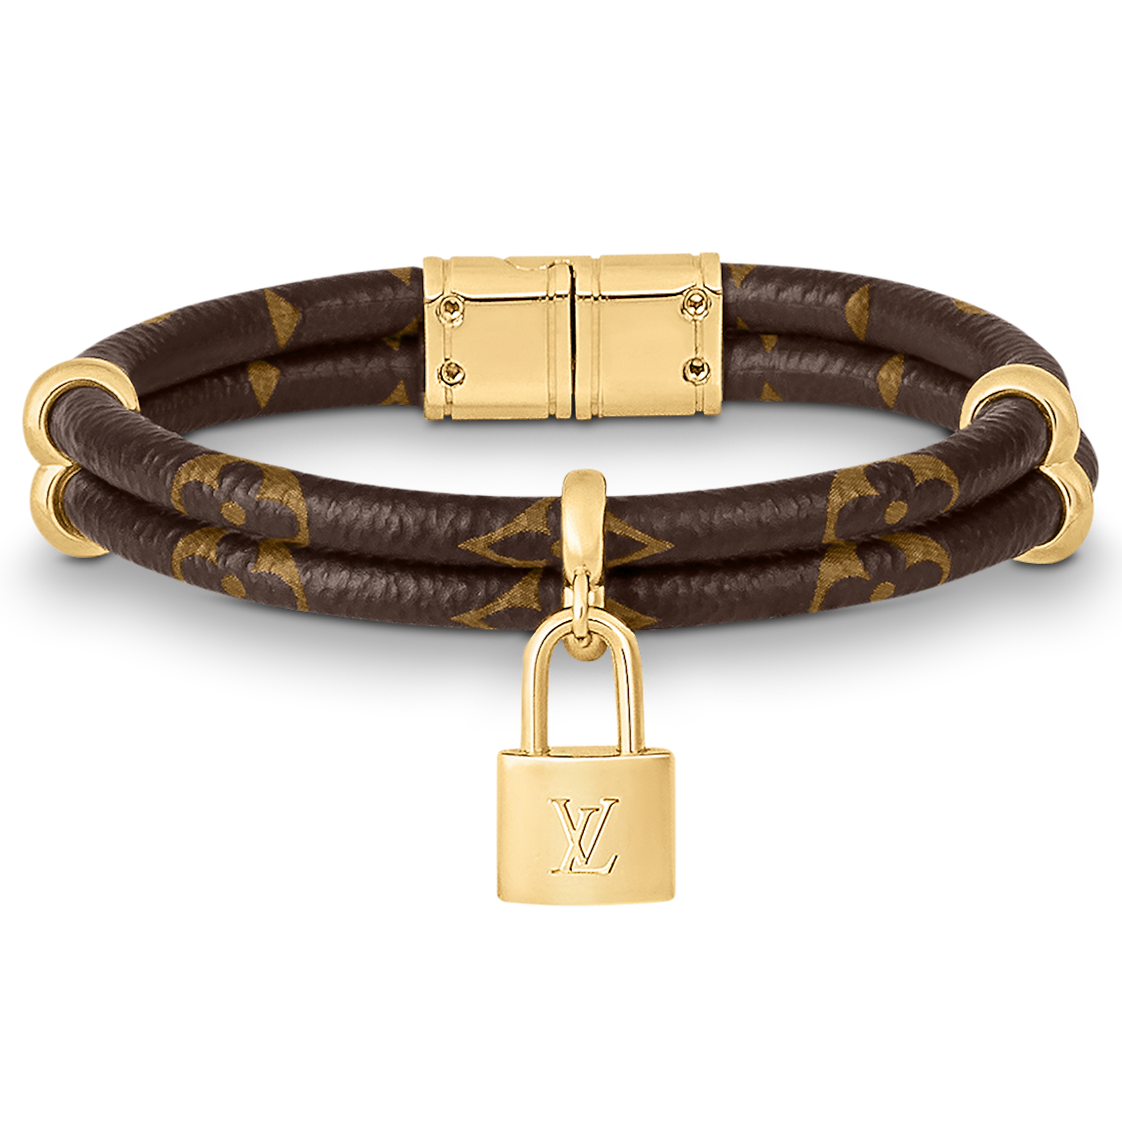 Shop Louis Vuitton Bracelets (M0947A, M0934A) by lifeisfun